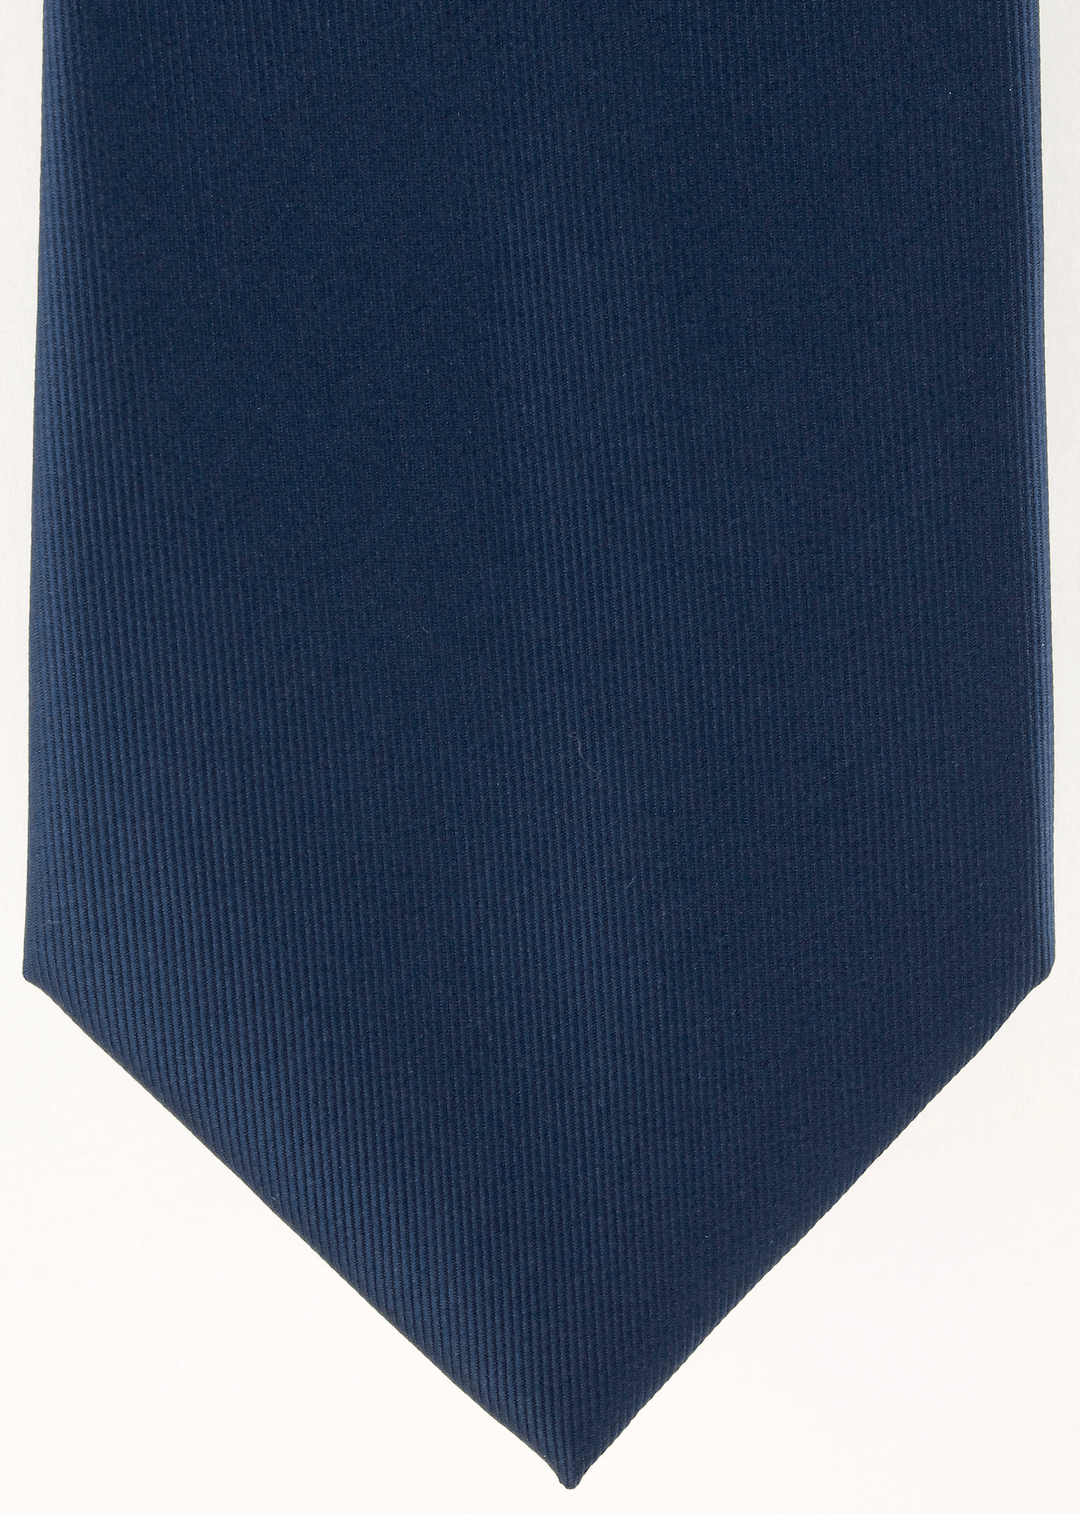 Cravate bleu marine | Cotton Park